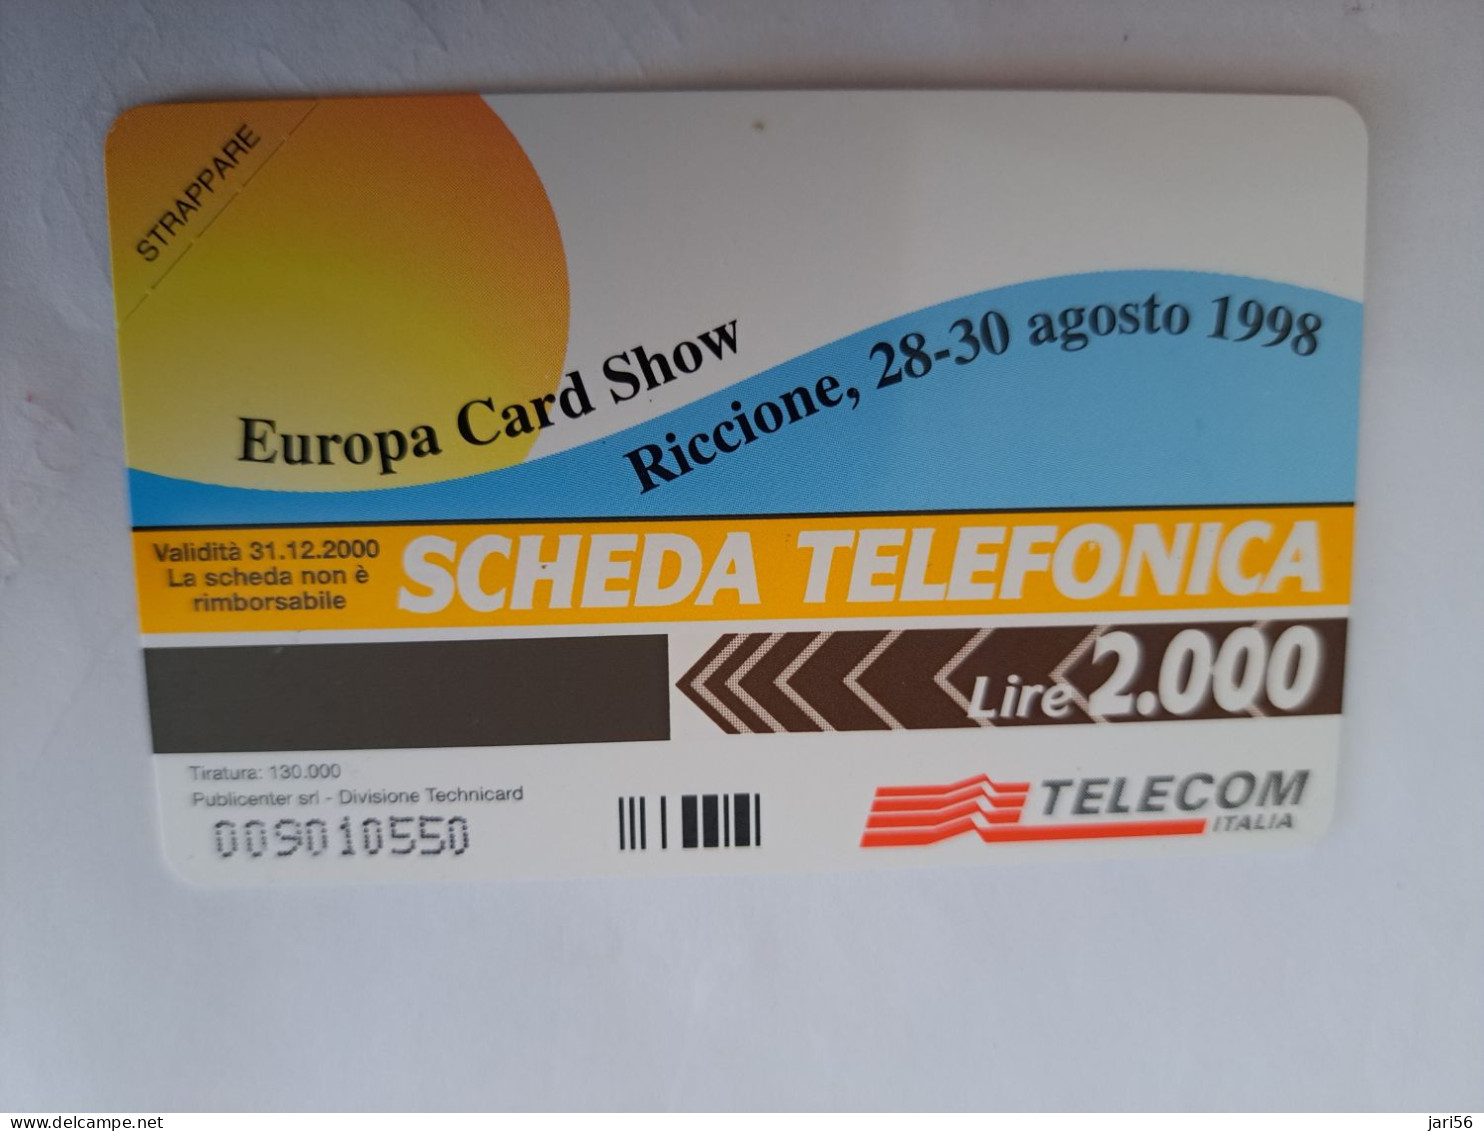 ITALIA LIRE 2000 / EUROPA CARD SHOW/ RICCIONE 1998    / PREPAID  MINT  ** 14240 ** - Public Ordinary